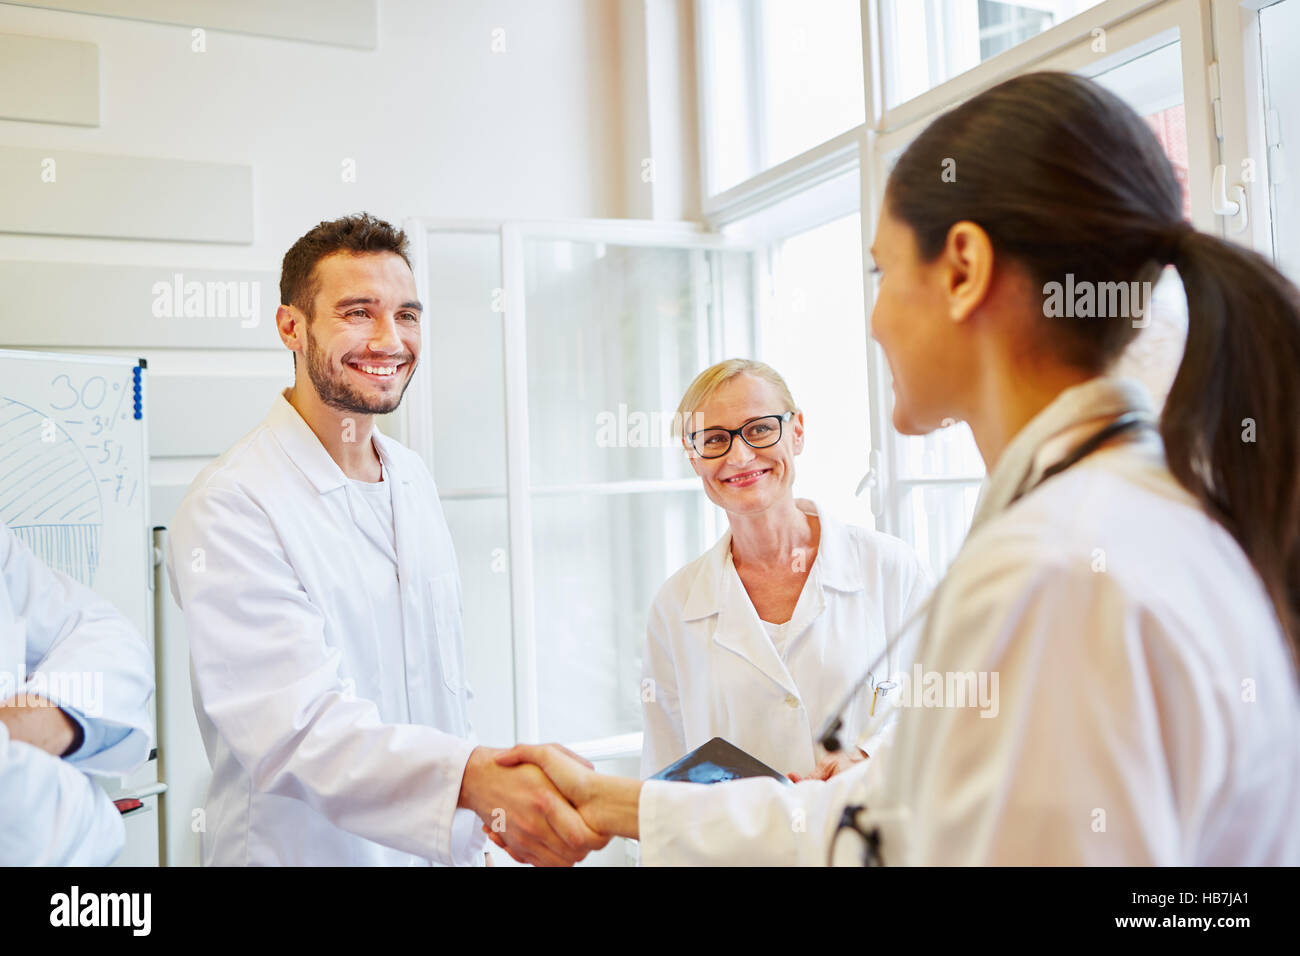 Handshake between doctors as congratulations gesture Stock Photo